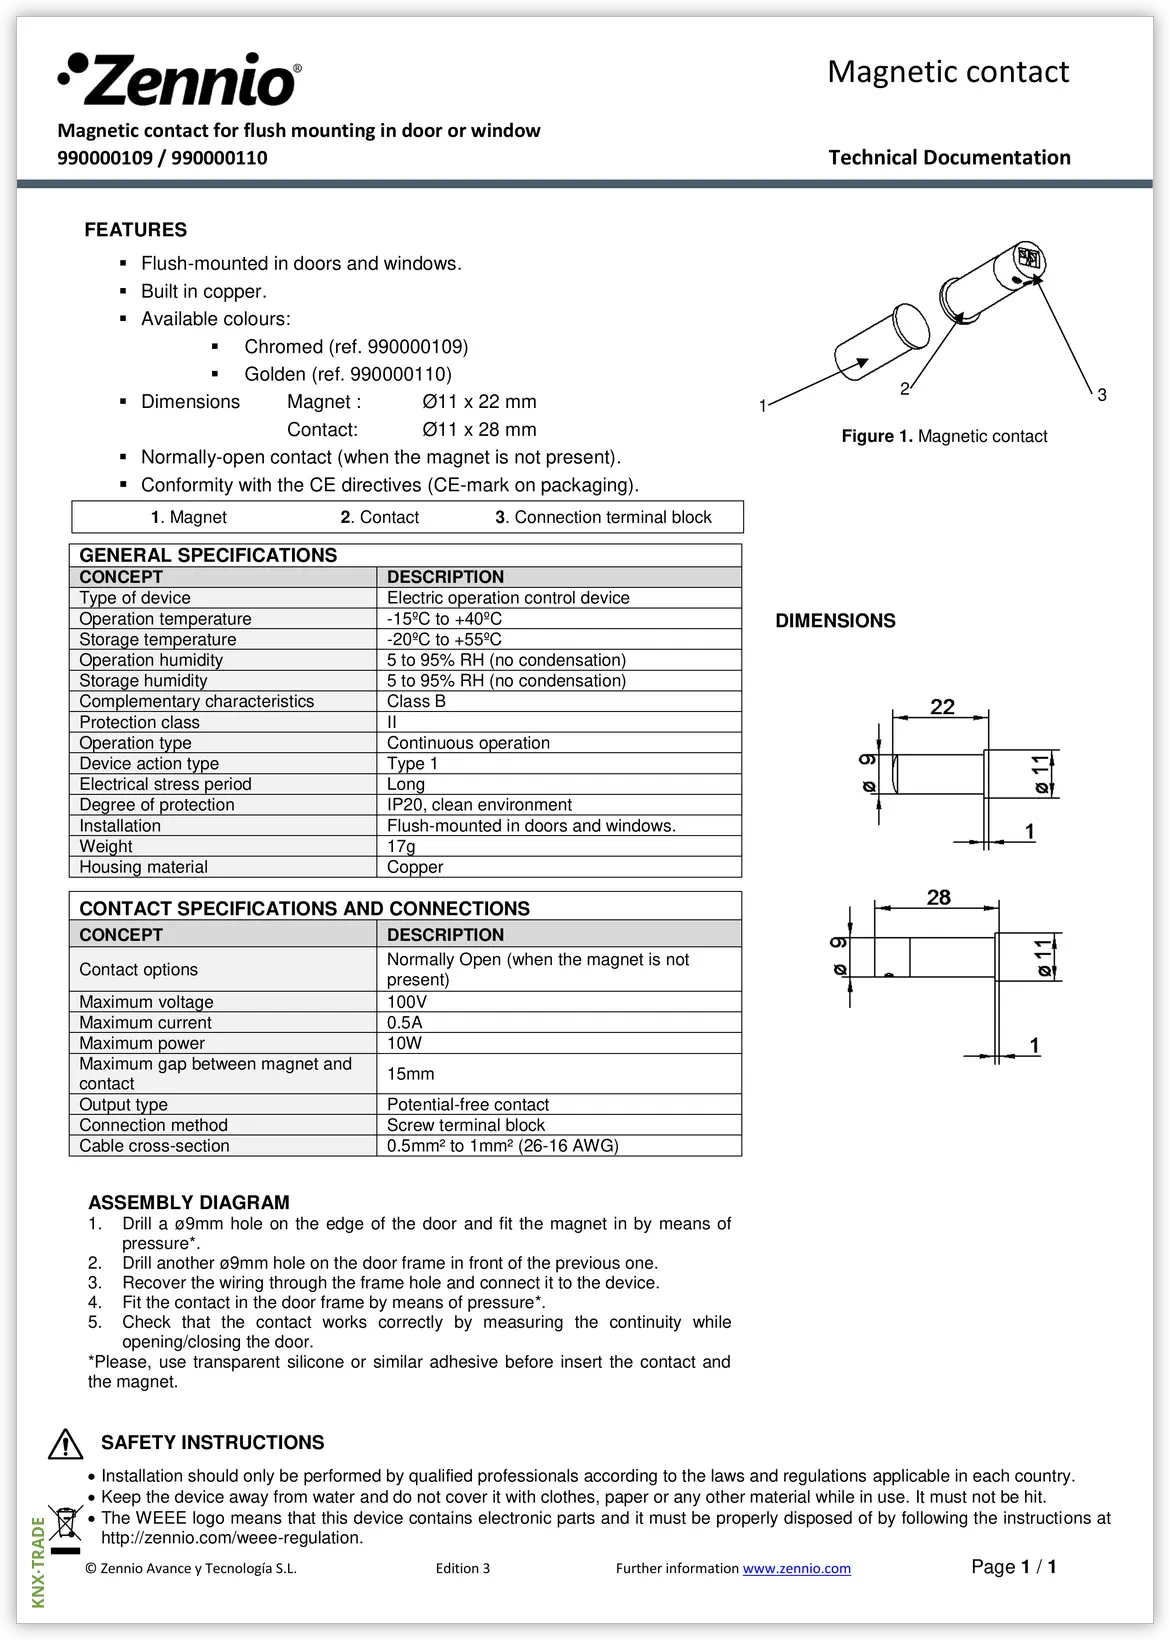 Datasheet (1) Zennio [9900001XX] Contact 9900001XX / Датчик магнито-контактный для дверей и окон, врезной